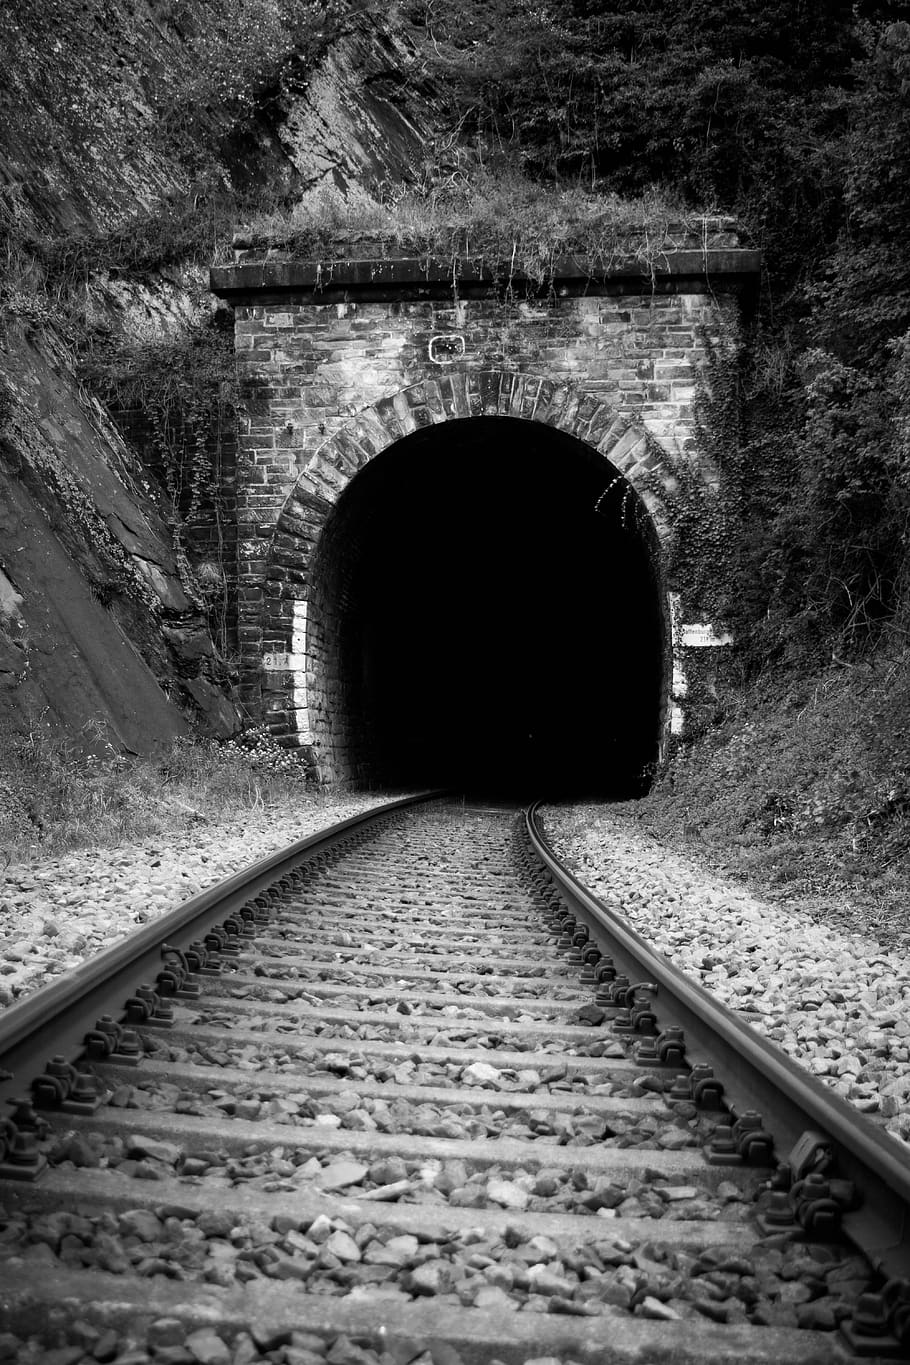 estrada de ferro, trem, túnel, metro, sistema de transporte, trilhos, preto e branco, paisagem, transporte, via férrea